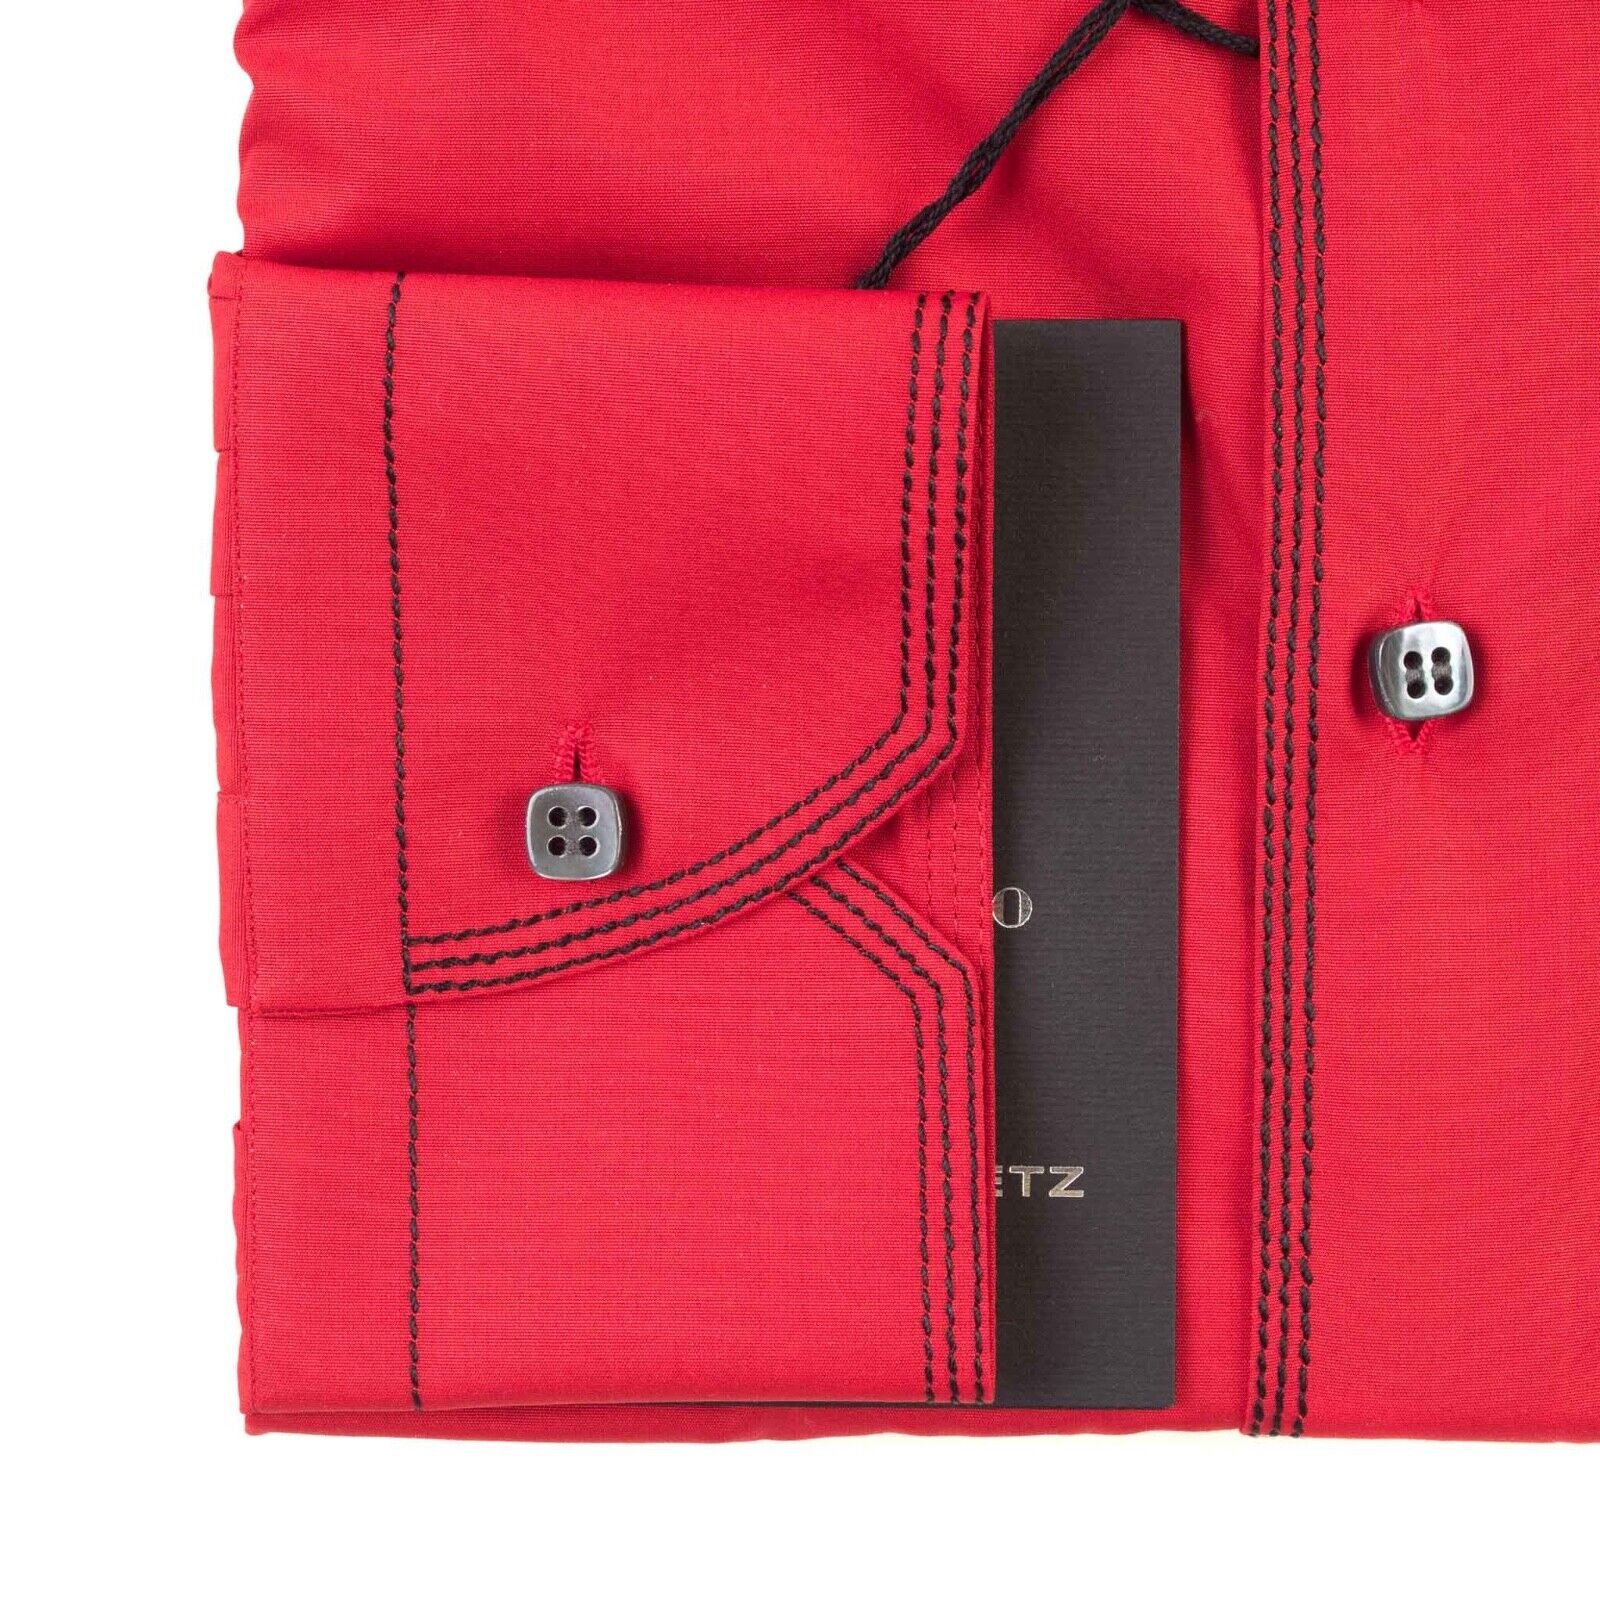 850 € neu mit Etikett Hettabretz von MAROL Größe: M Baumwolle schwarz roter Stich handgefertigt